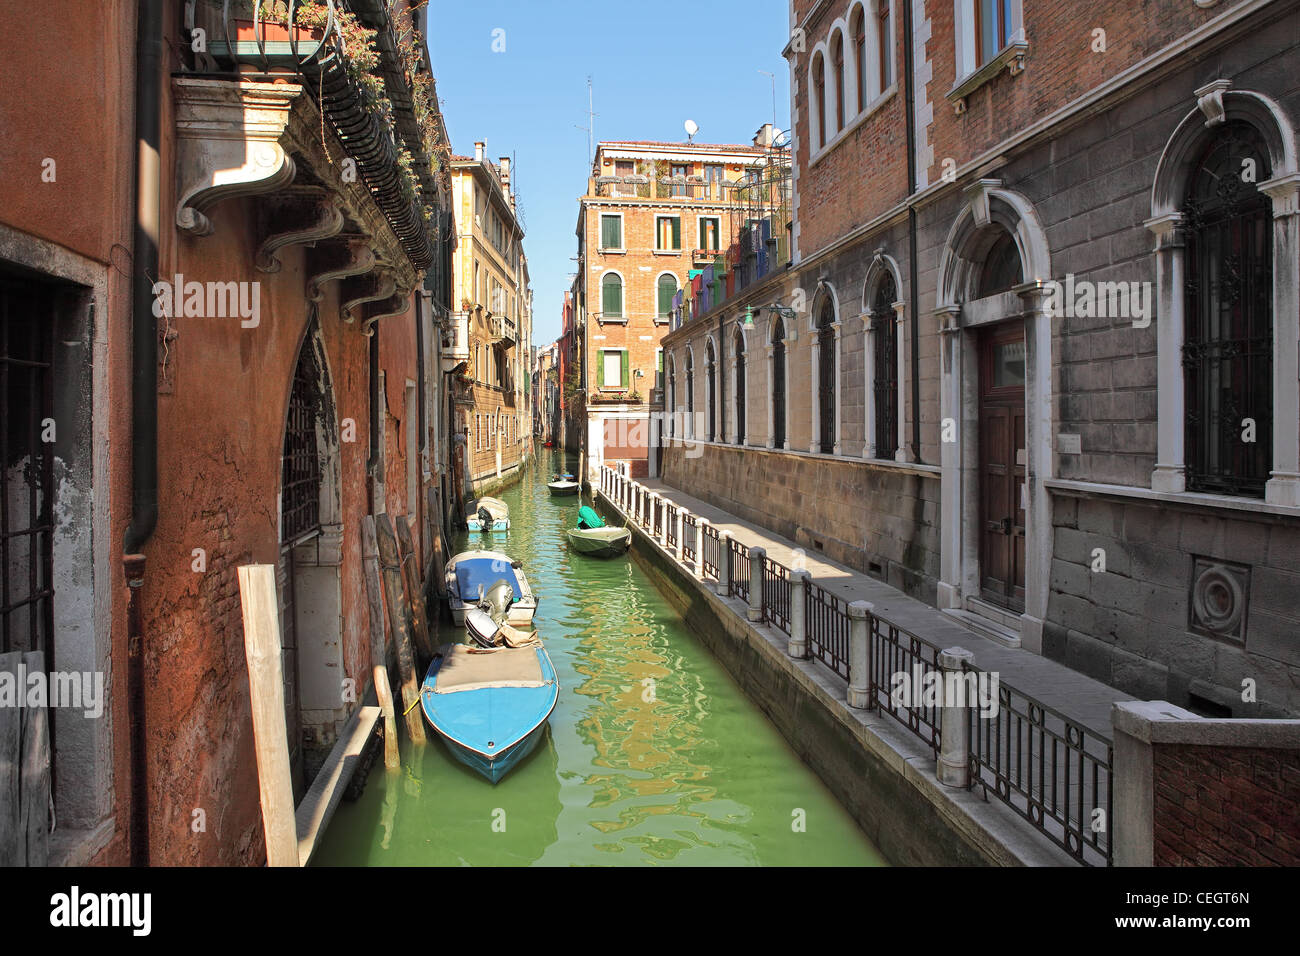 Horizontales Bild des kleinen engen Kanal mit Booten unter alten historischen Häuser in Venedig, Italien. Stockfoto